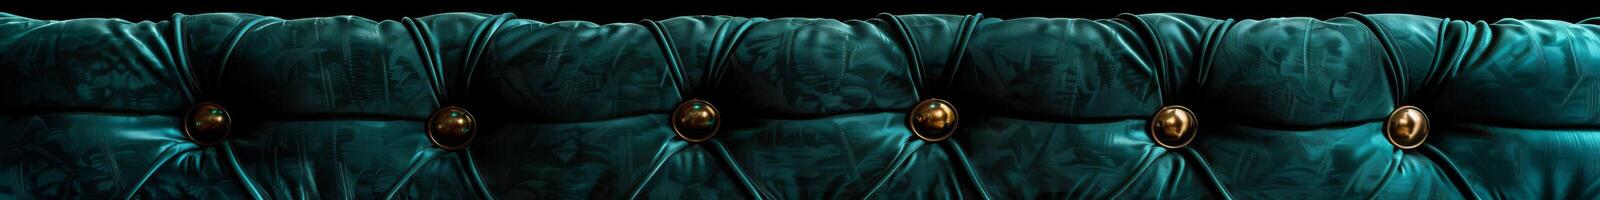 luxuriös blaugrün Samt Kissen Textur mit golden Tasten foto